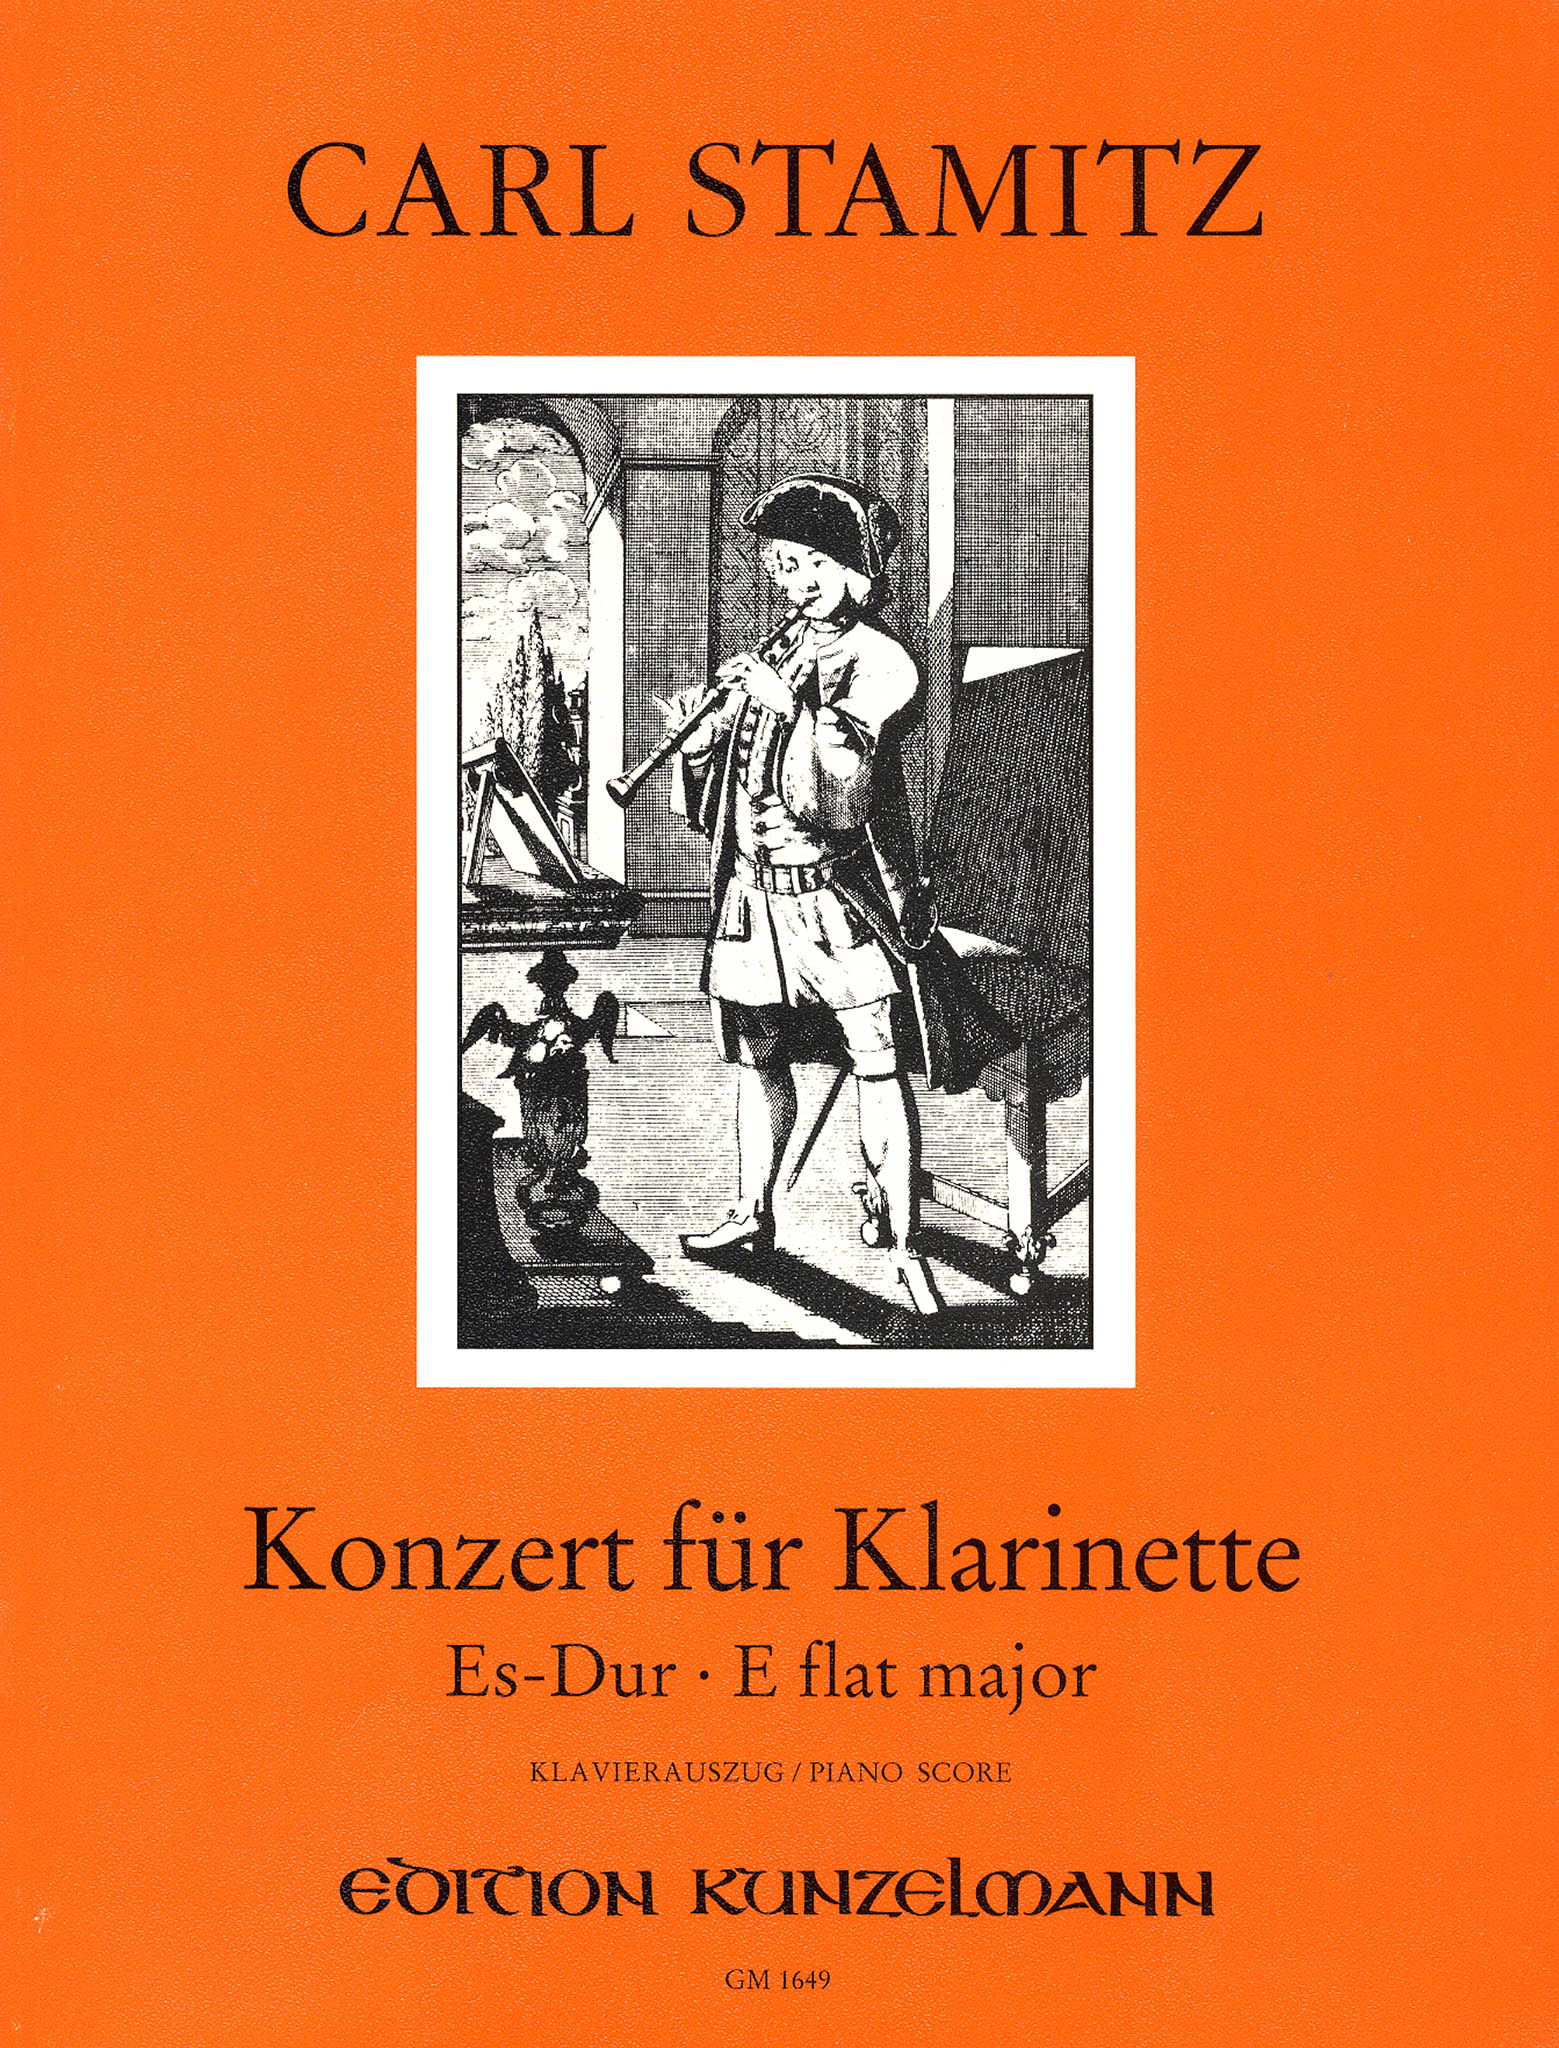 Clarinet Concerto No. 6 (Kaiser) in E-flat Major Cover